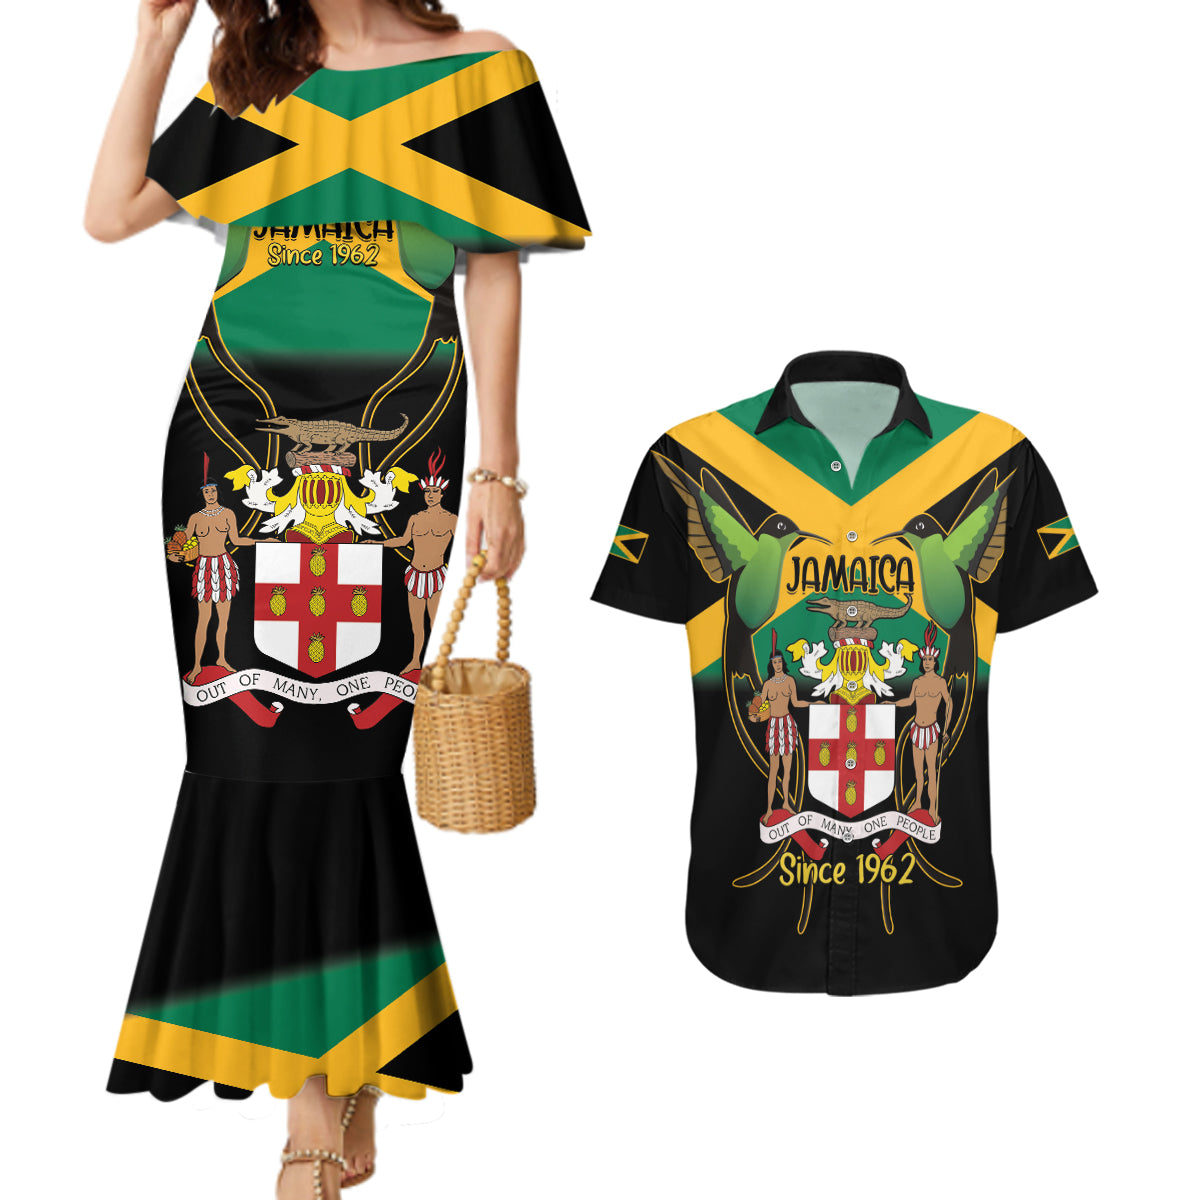 Jamaica Independence Day Couples Matching Mermaid Dress and Hawaiian Shirt Jumieka Coat Of Arms Mix Hummingbird